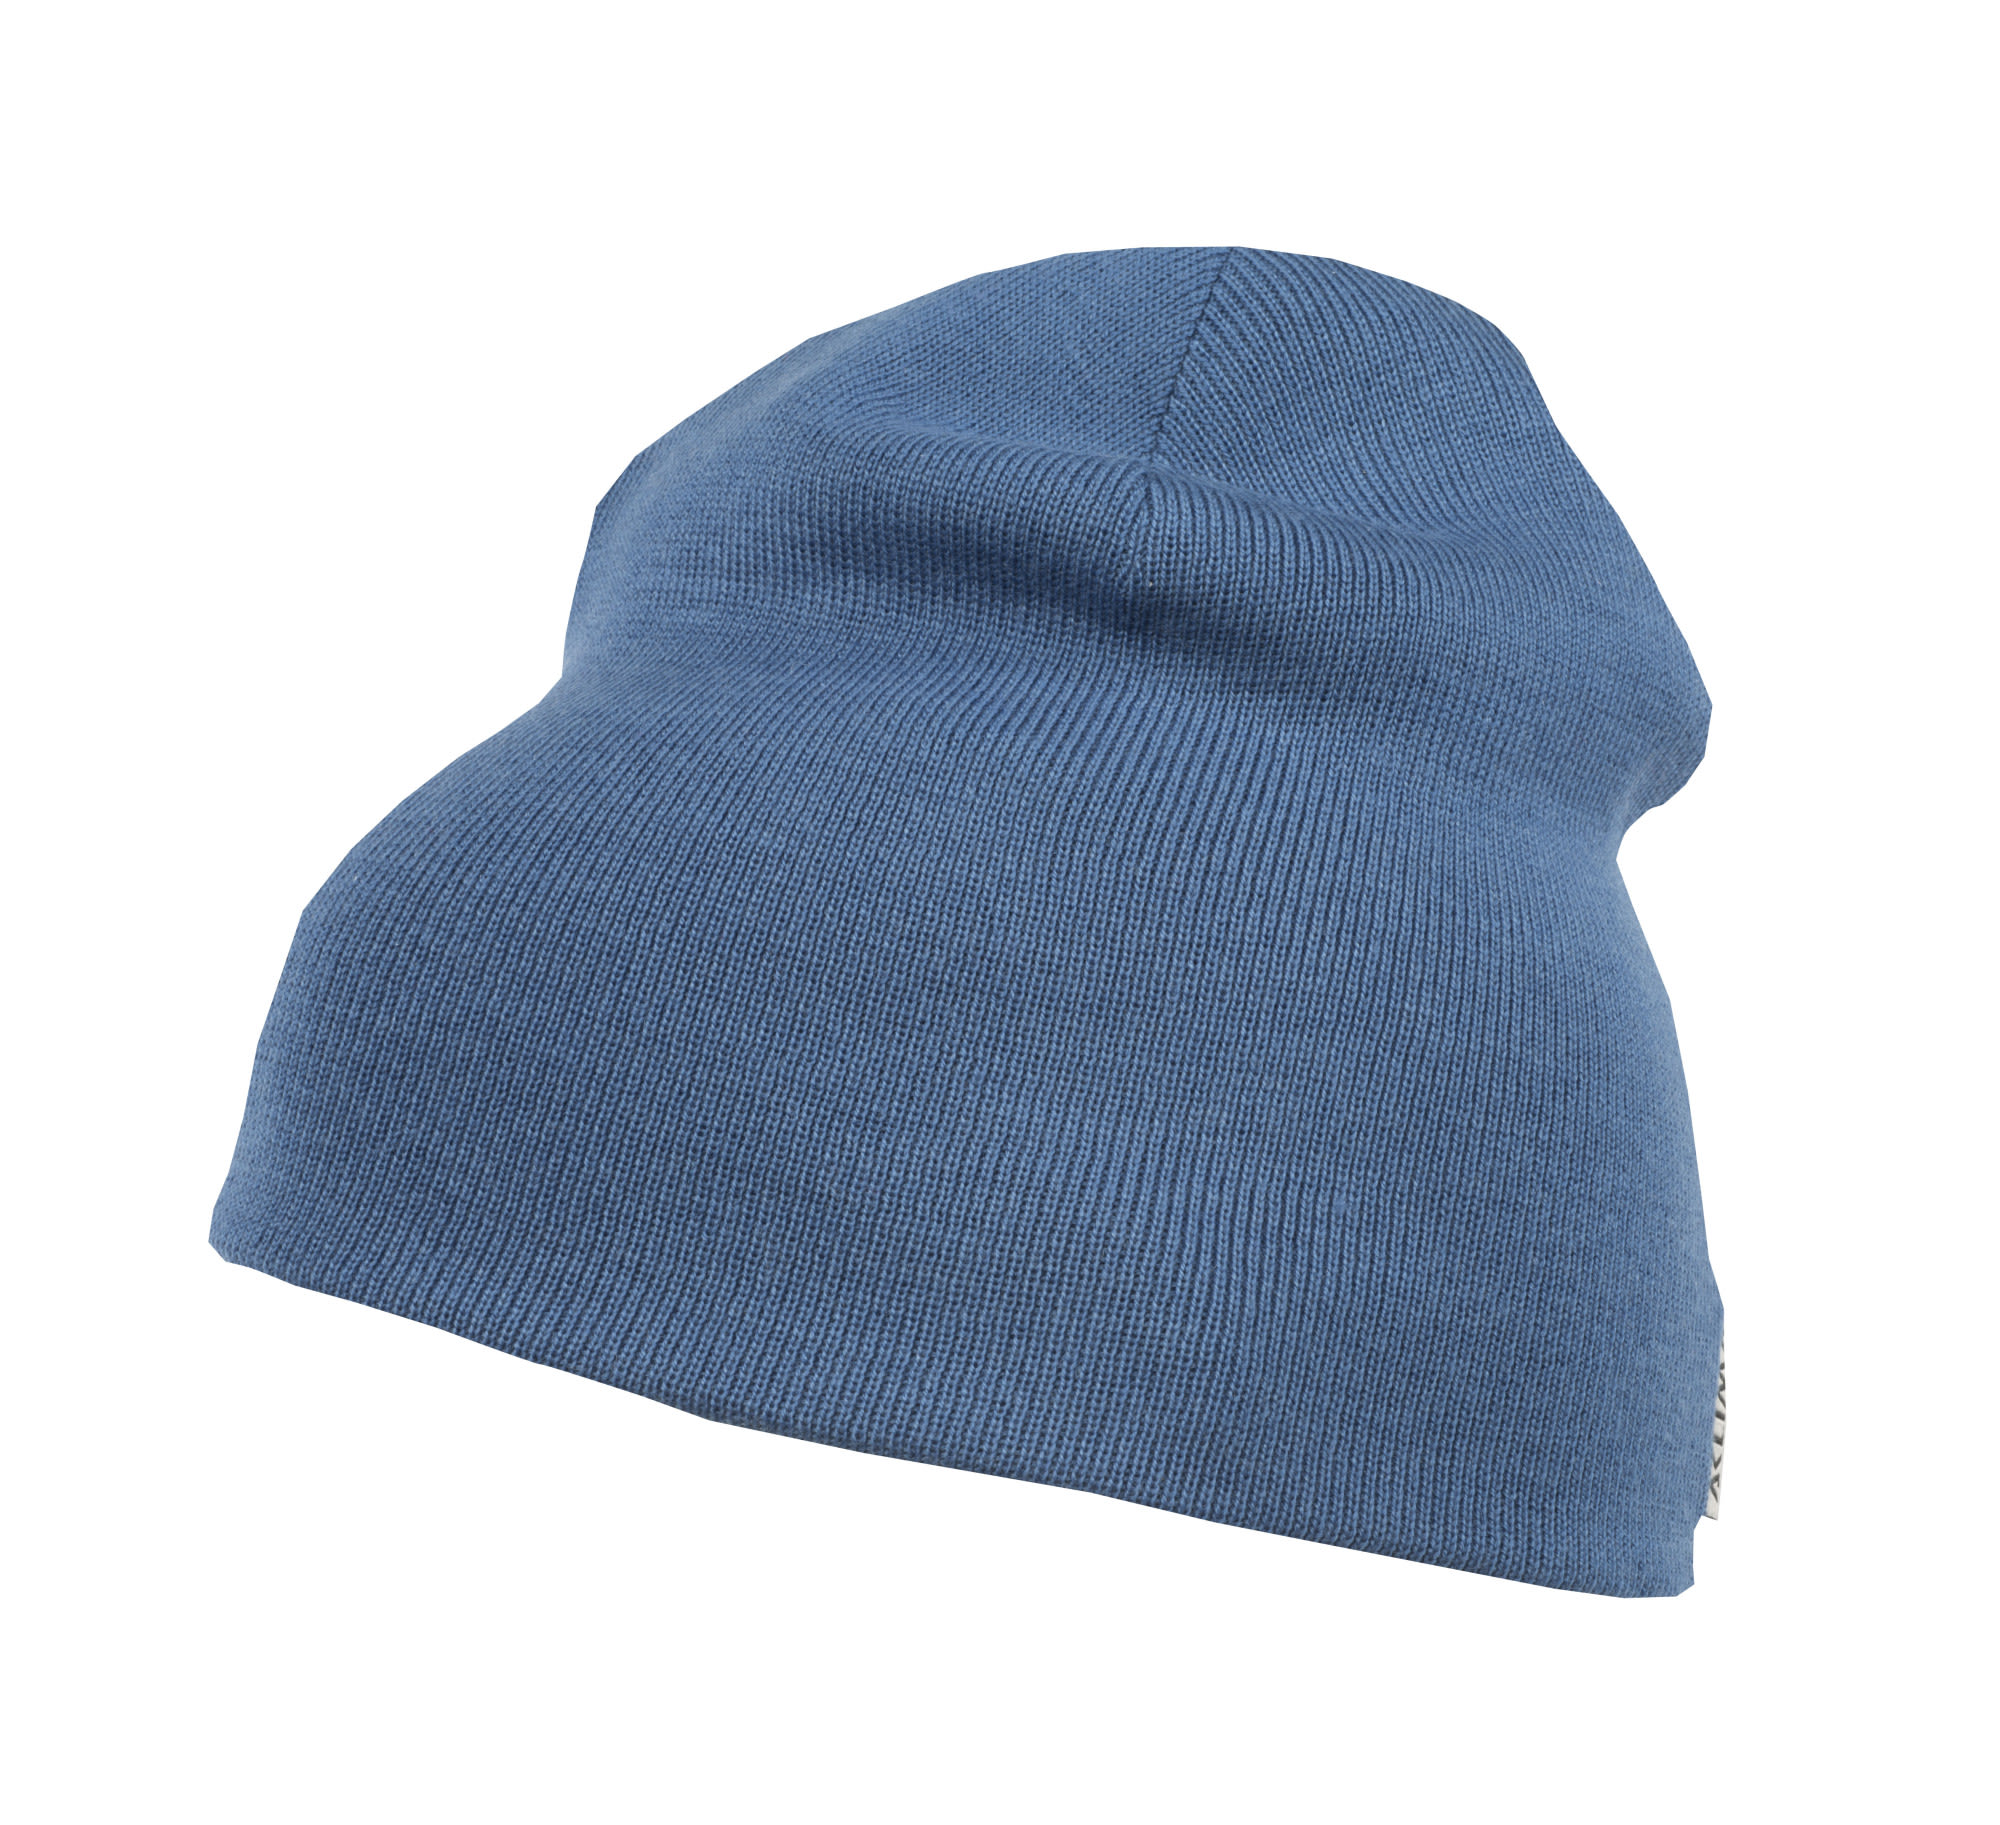 Aclima Classic Beanie Blau- Merino Kopfbedeckungen- Grsse One Size - Farbe Blue Sapphire unter Aclima